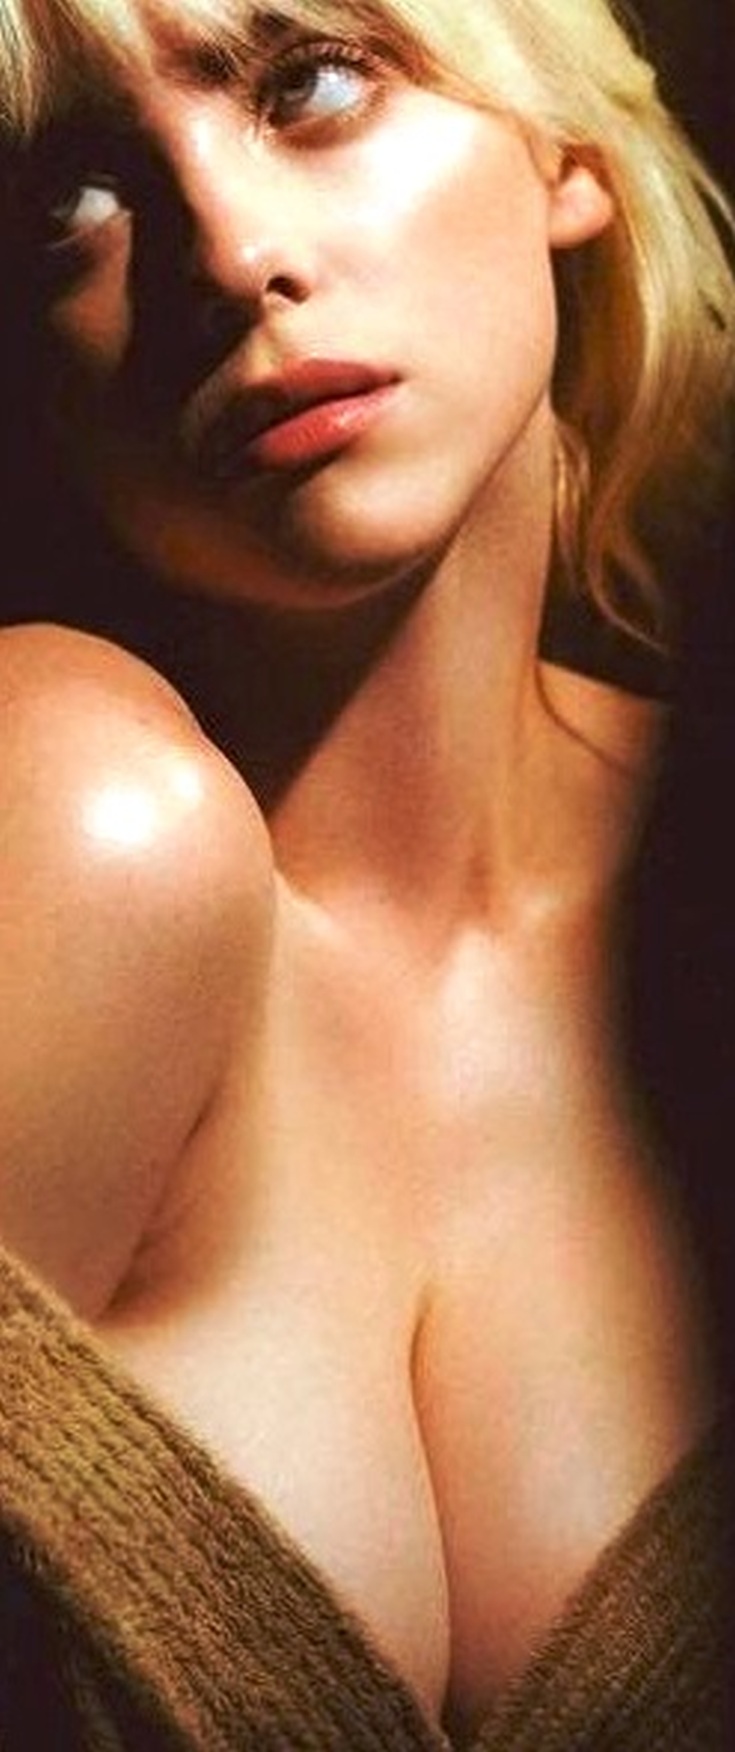 Слив фото Билли Айлиш (Билли Айлиш Бейрд О’Коннелл) американская певица википедия горячие интим фото